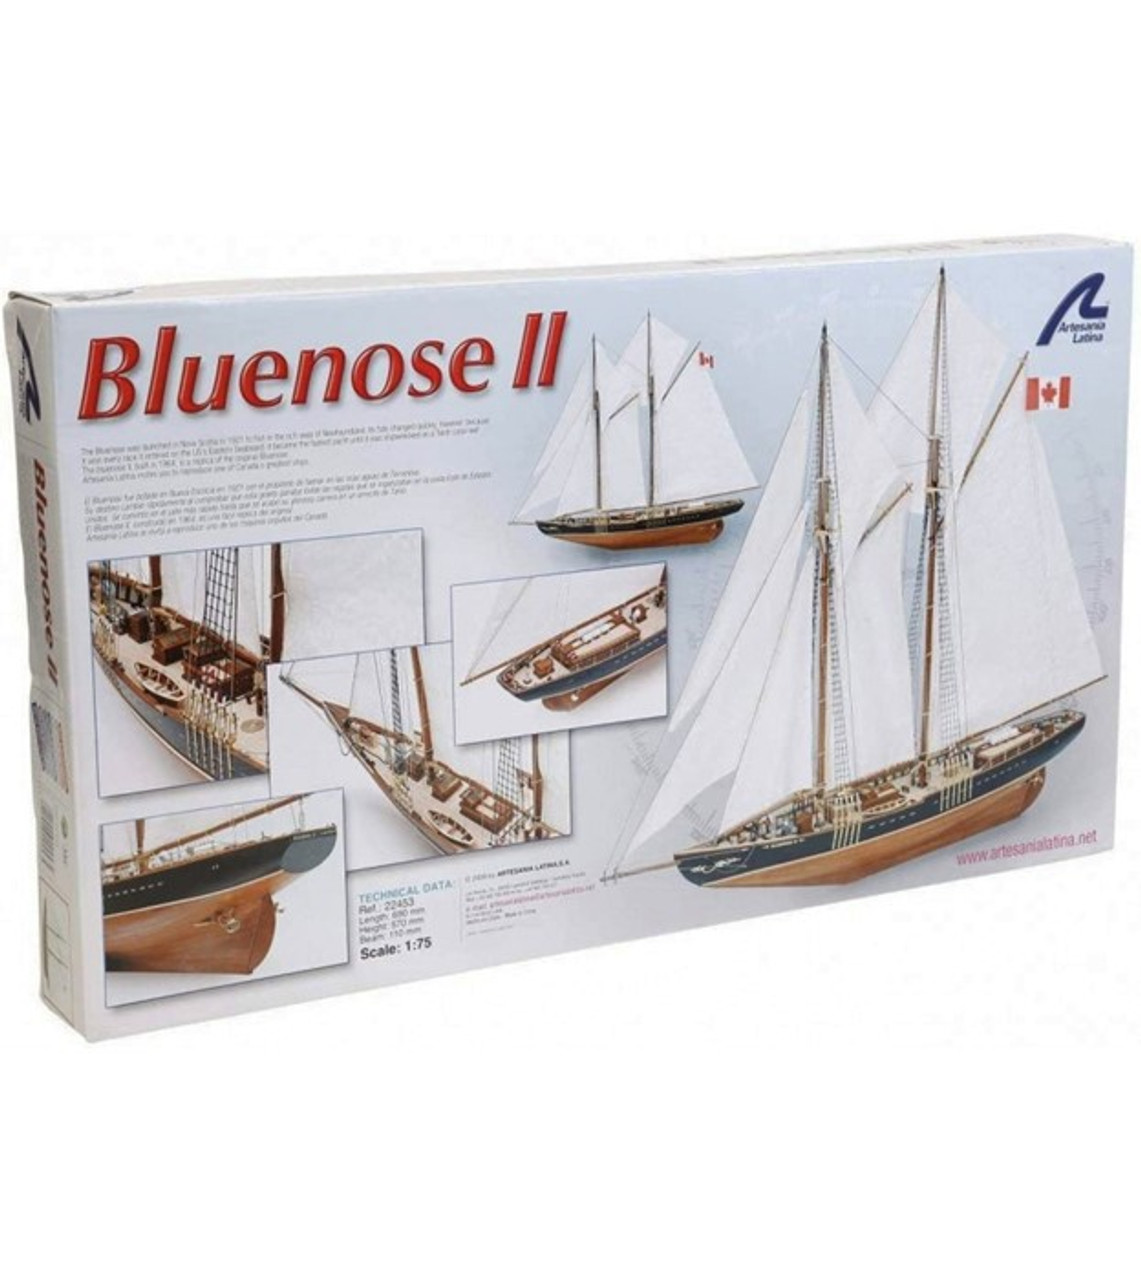 Fishing & Regattas Schooner Bluenose II. 1:75 Wooden Model Ship Kit